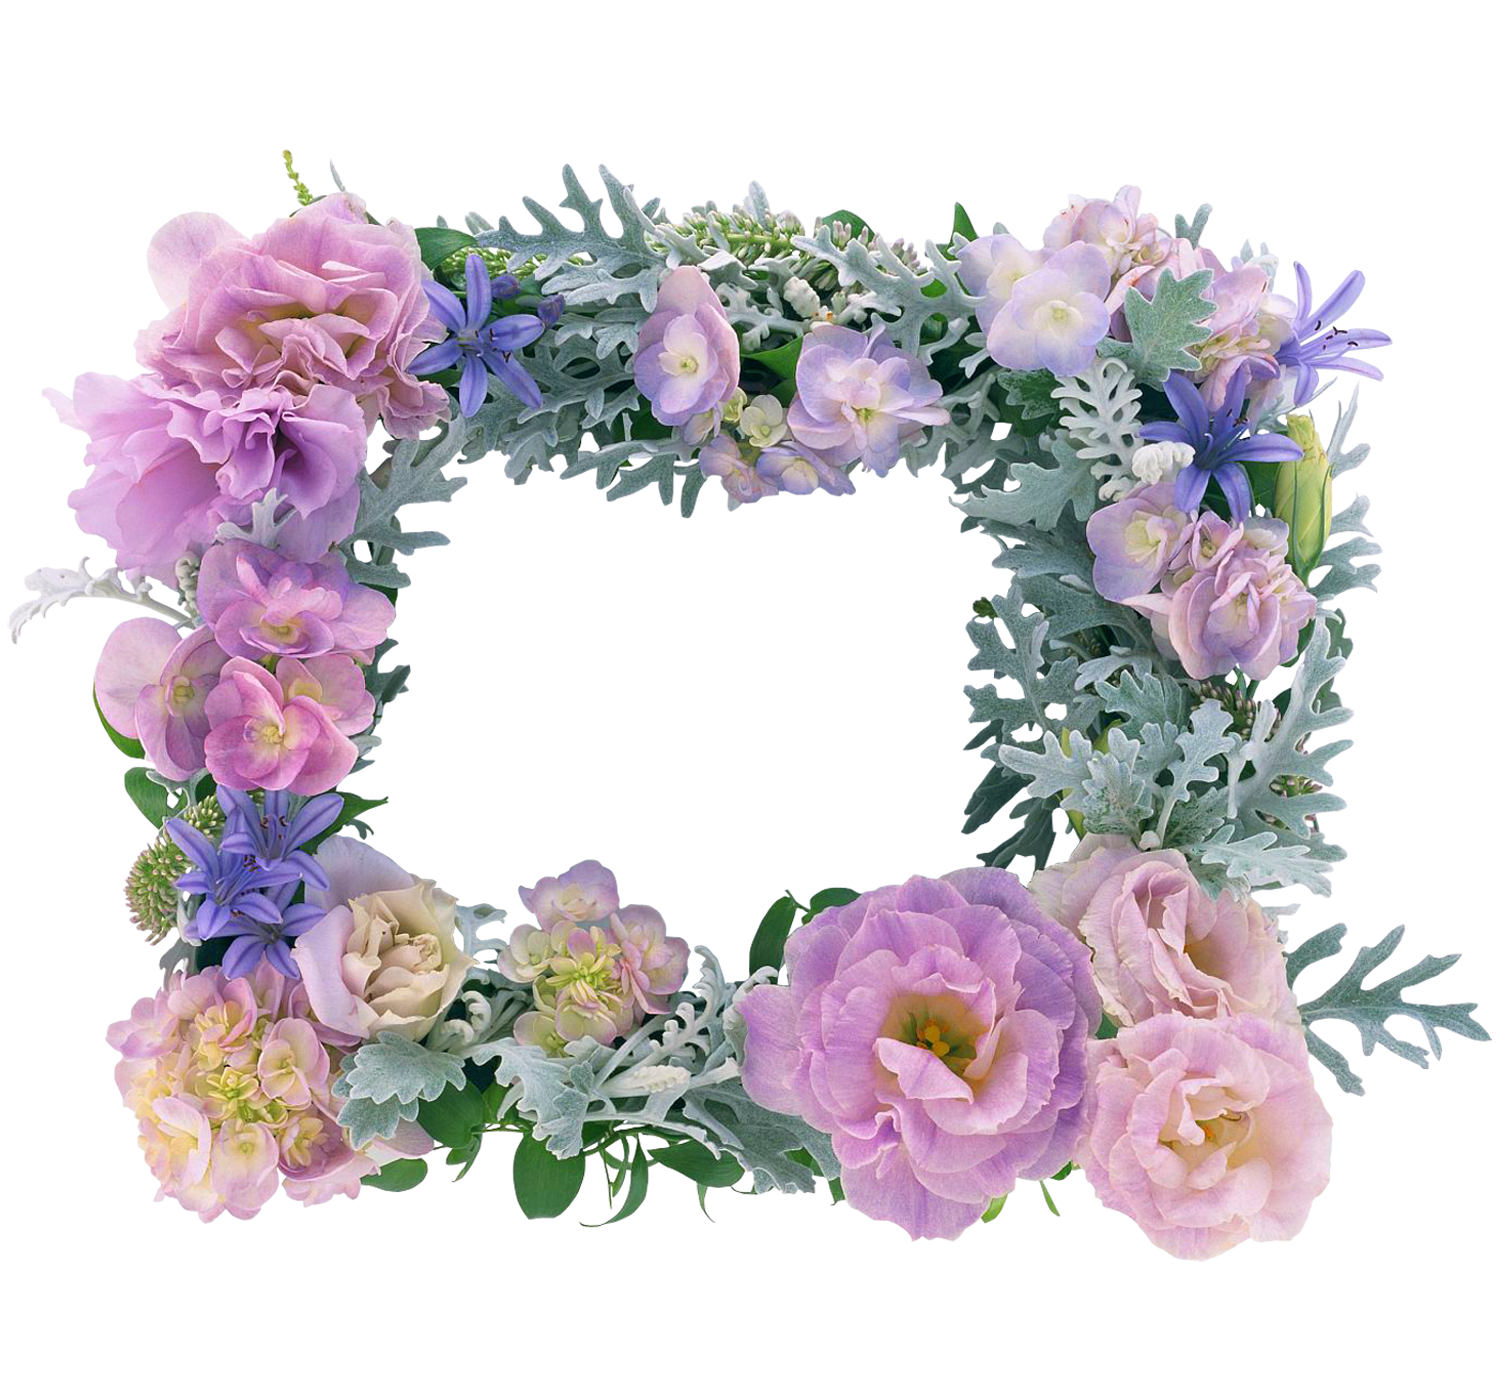 marcos para fotos de flores hermosas - Marco de hermosas flores con pétalos de rosas